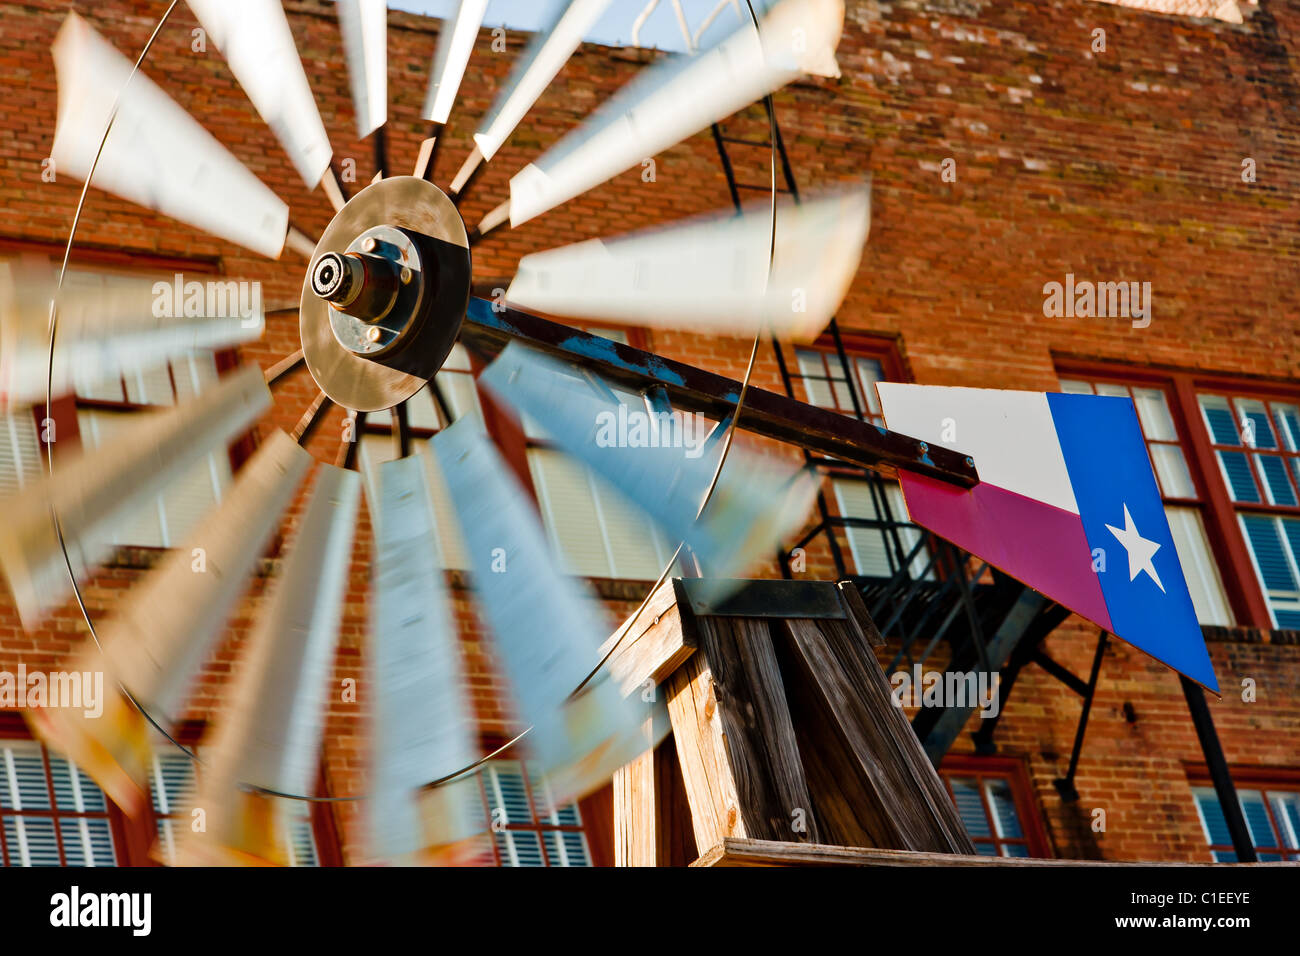 Un moulin à vent avec un drapeau du Texas, que l'on retrouve normalement sur une ferme, monté à l'avant de l'historique hôtel Rogers, San Marcos, Texas. Banque D'Images